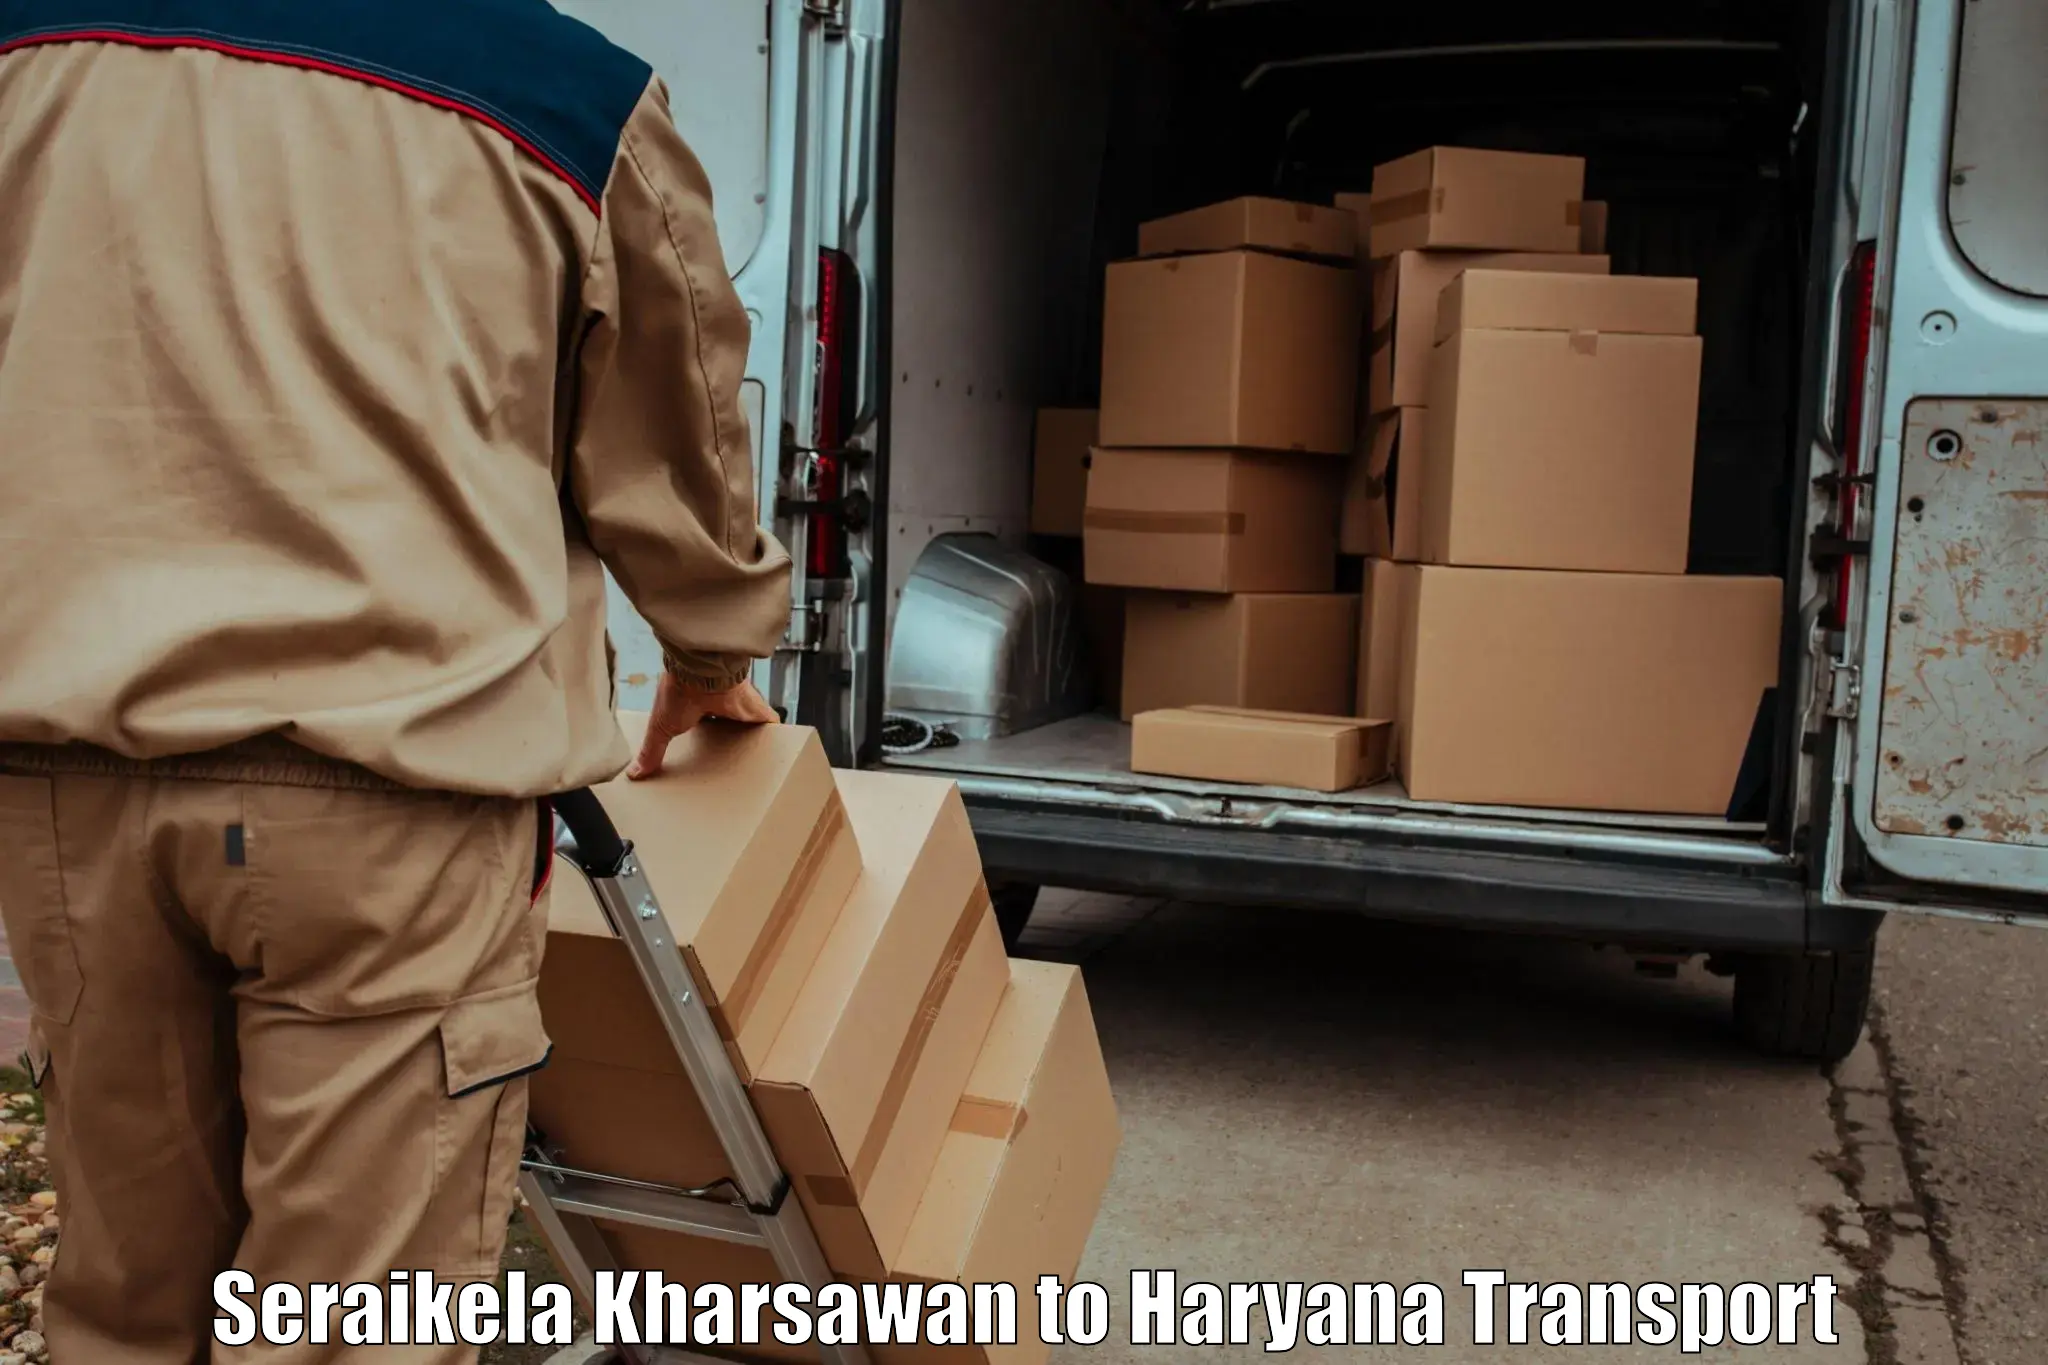 Two wheeler transport services Seraikela Kharsawan to Gurugram